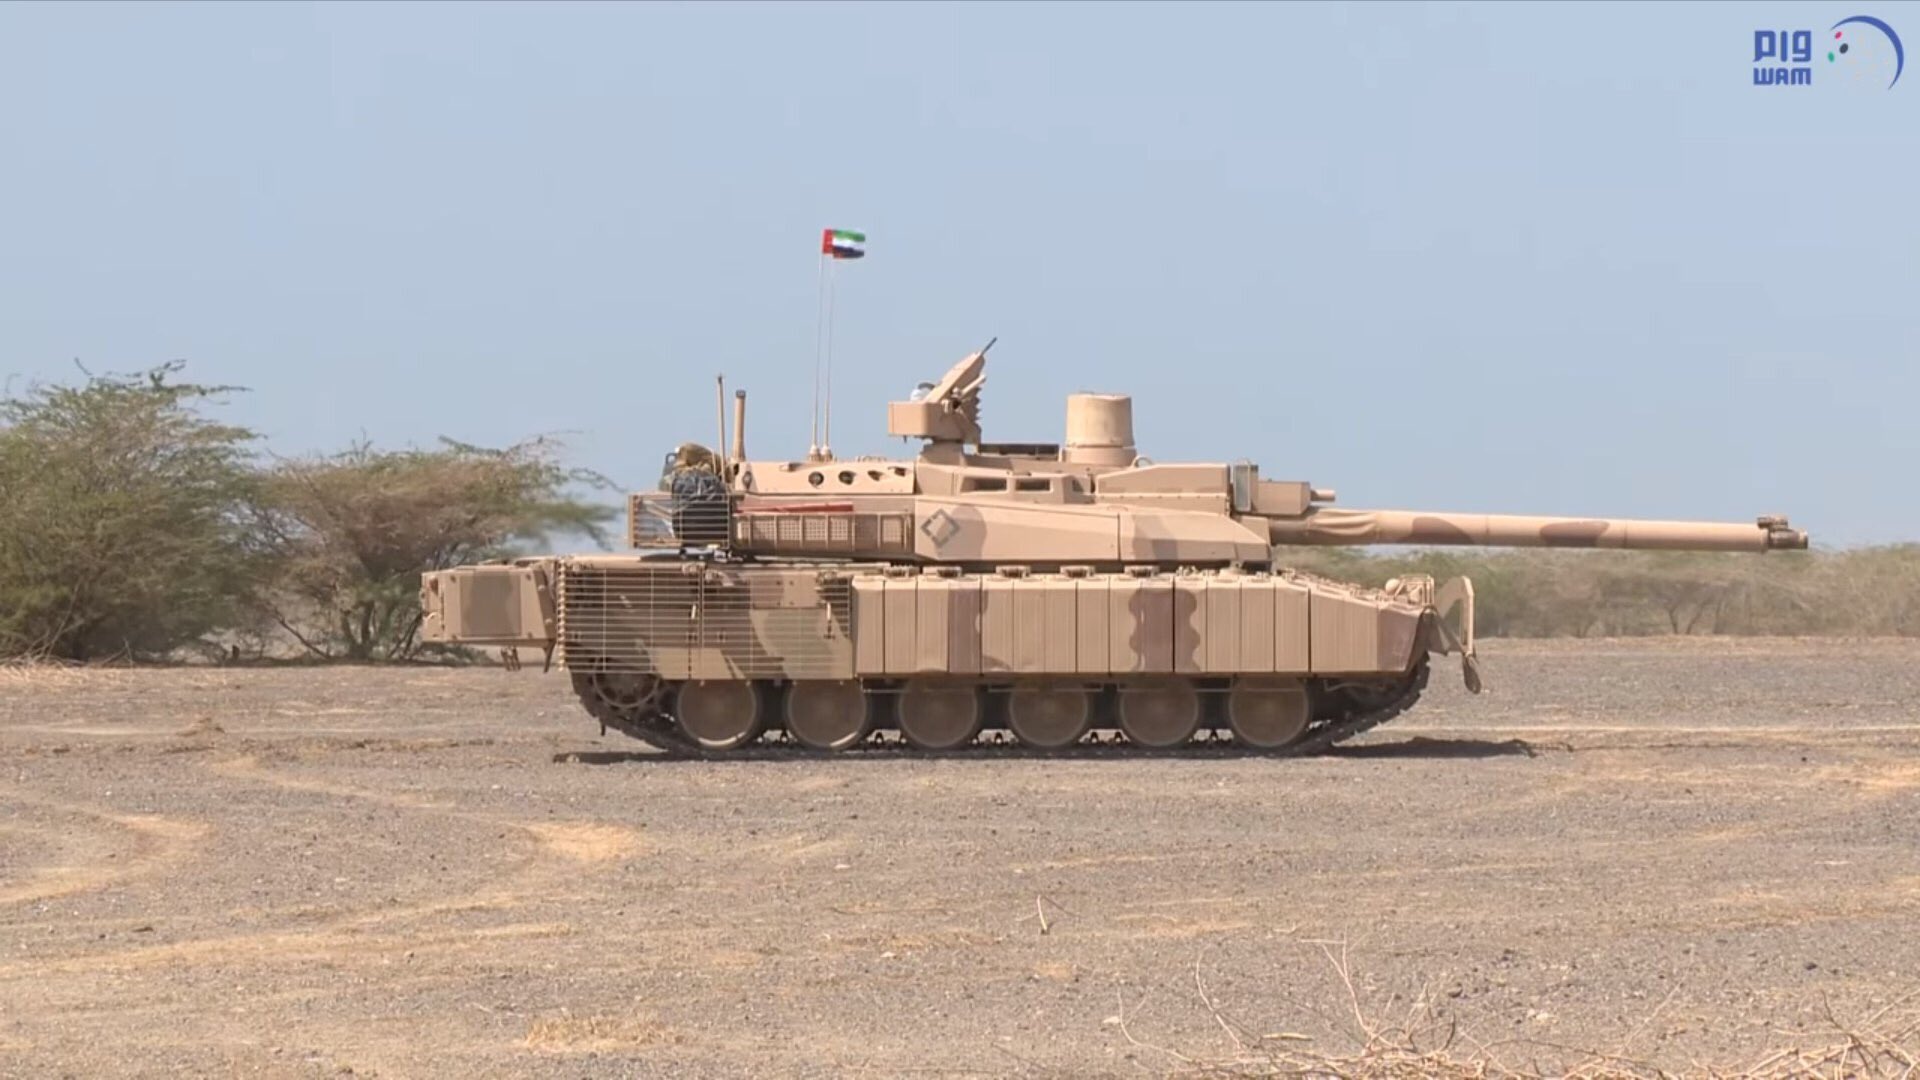 Μεγάλη επίθεση των ΗΑΕ στην Υεμένη: Άρματα μάχης Leclerc και Α/Κ πυροβολικό εναντίον των Χούτις! (βίντεο)